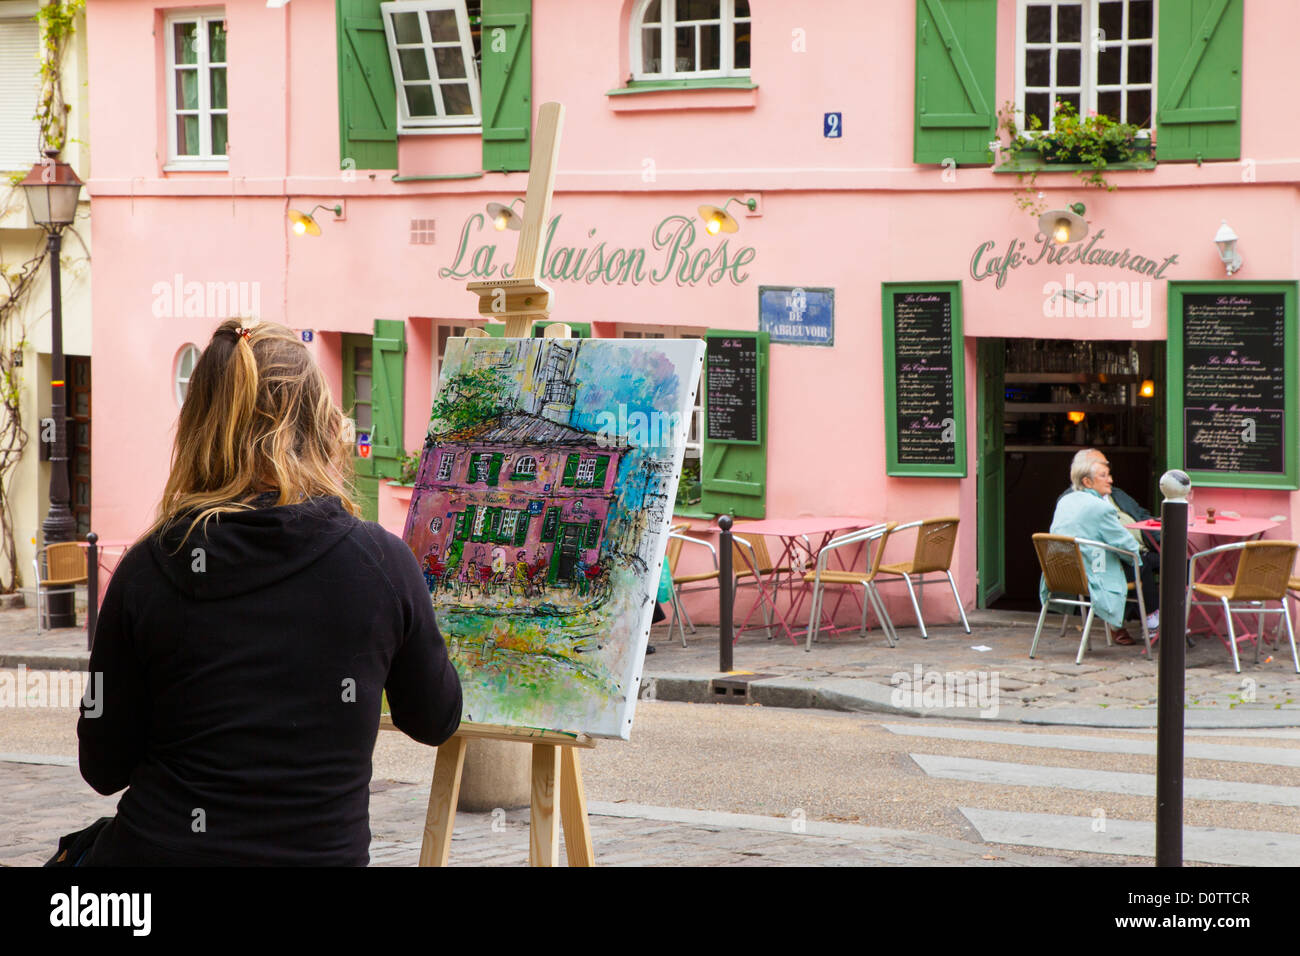 La peinture de l'artiste La Maison Rose Cafe à Montmartre, Paris France Banque D'Images